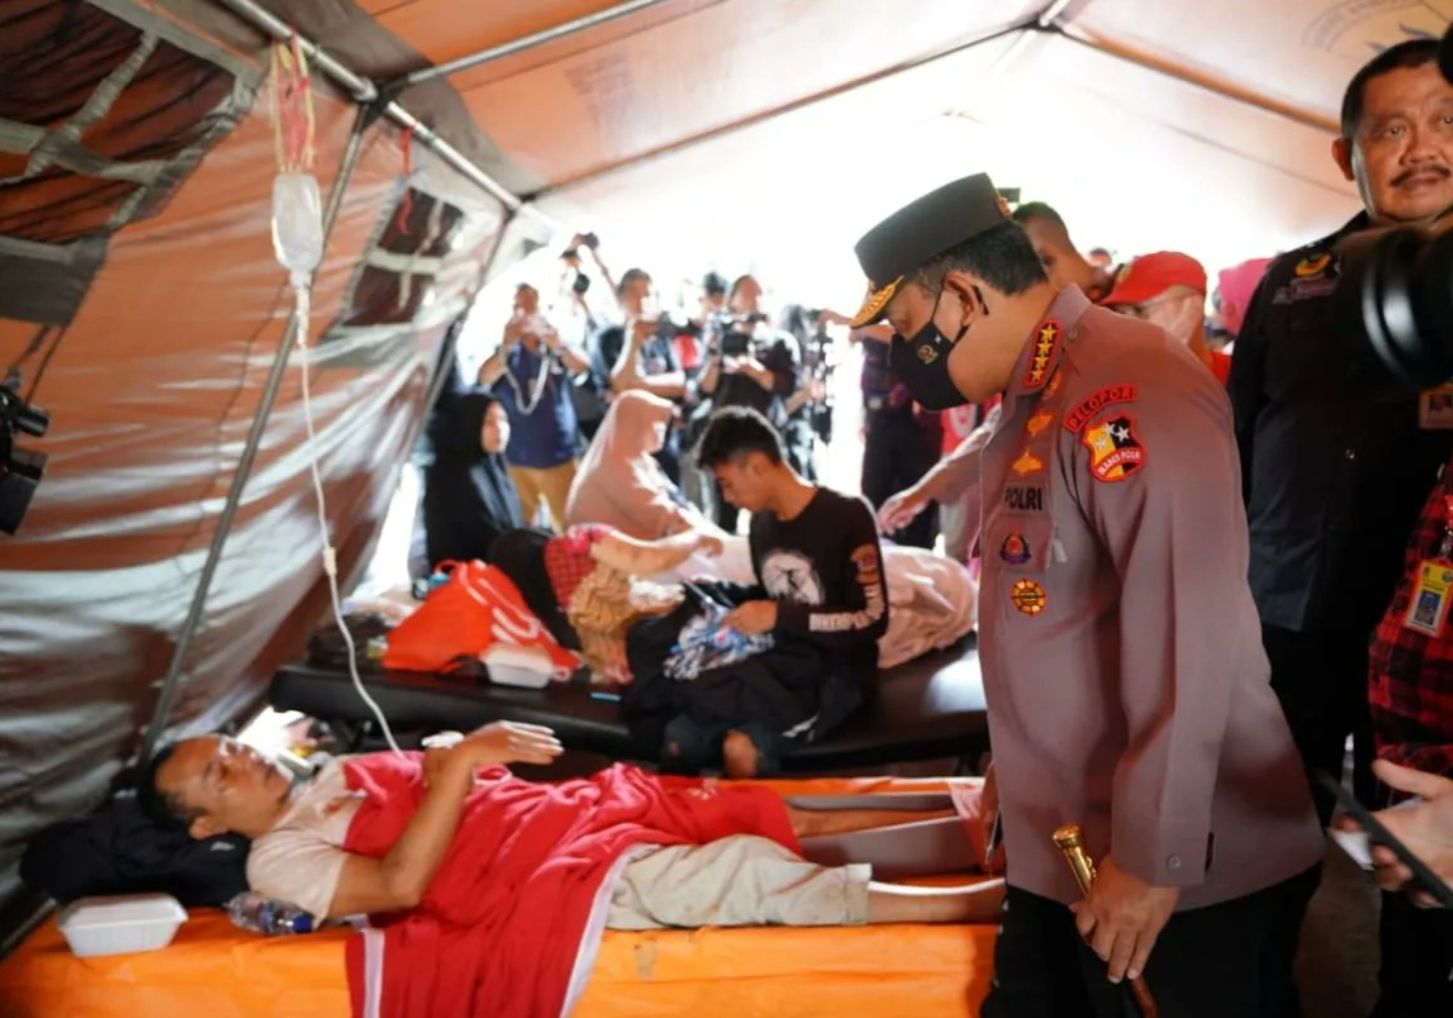 Kapolri Jenderal Polisi Listyo Sigit Prabowo jenguk korban gempa Cianjur dan pengungsi di Jawa Barat, pastikan bantuan terpenuhi maksimal.